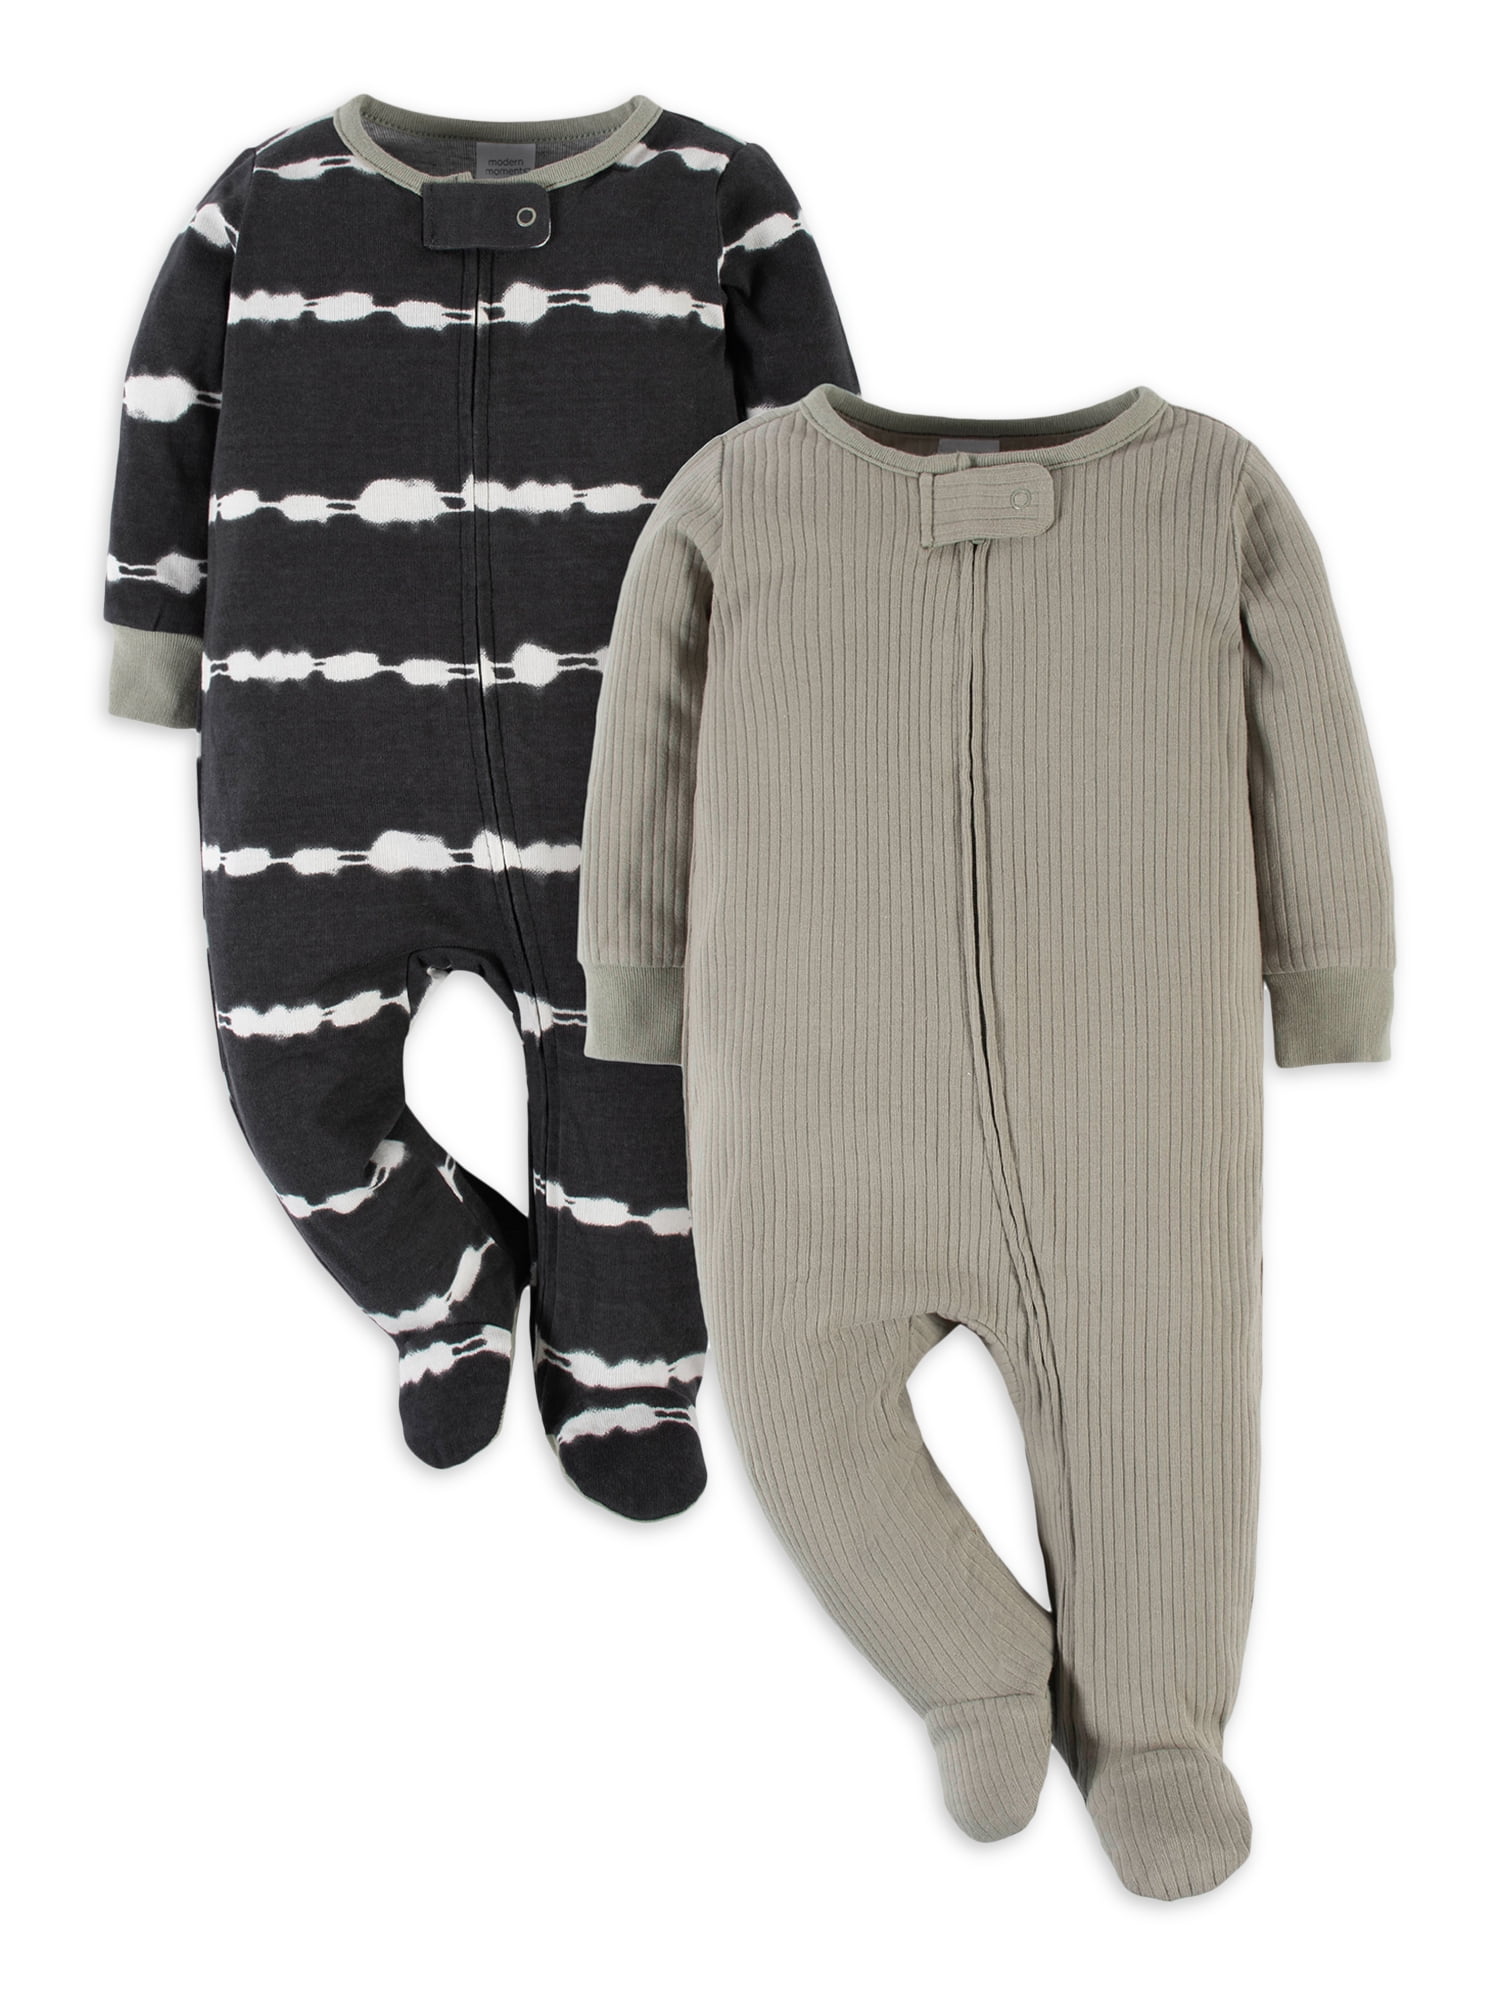 Gerber Baby 3-Pack ‘Sleep-n-Play’ Long Sleeve Sleepers—Boy or Girl Choose Size 